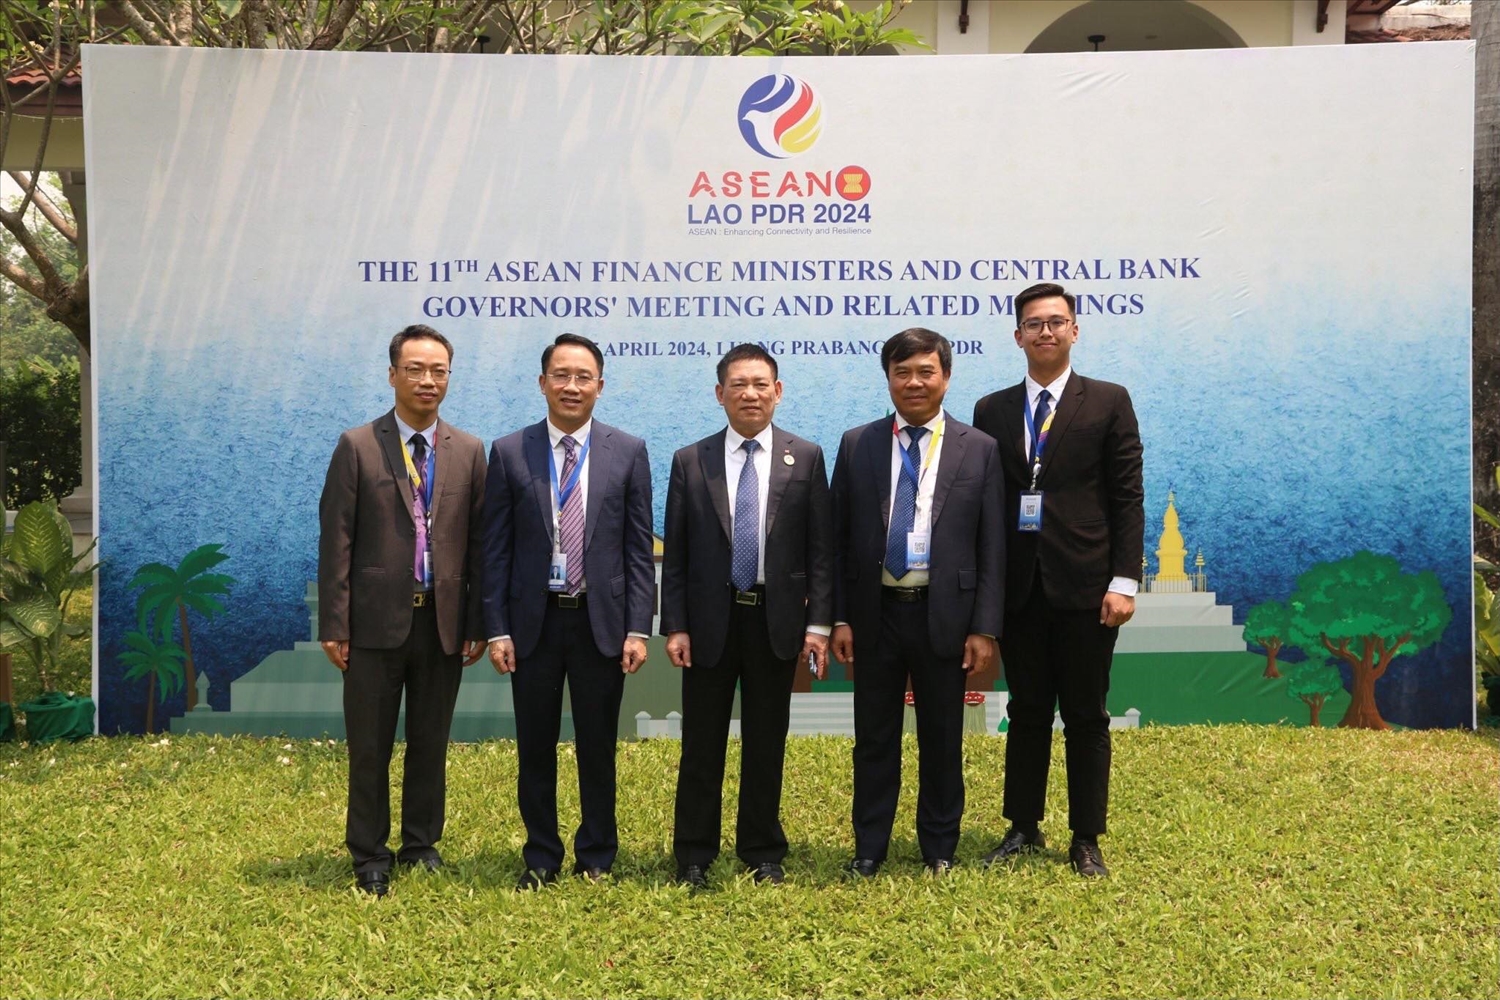 Bộ trưởng Bộ Tài chính Hồ Đức Phớc (giữa) cùng các lãnh đạo Hải quan, Thuế tham dự Hội nghị Bộ trưởng Tài chính và Thống đốc Ngân hàng Trung ương ASEAN (AFMGM) tháng 4/2024 tại Lào.